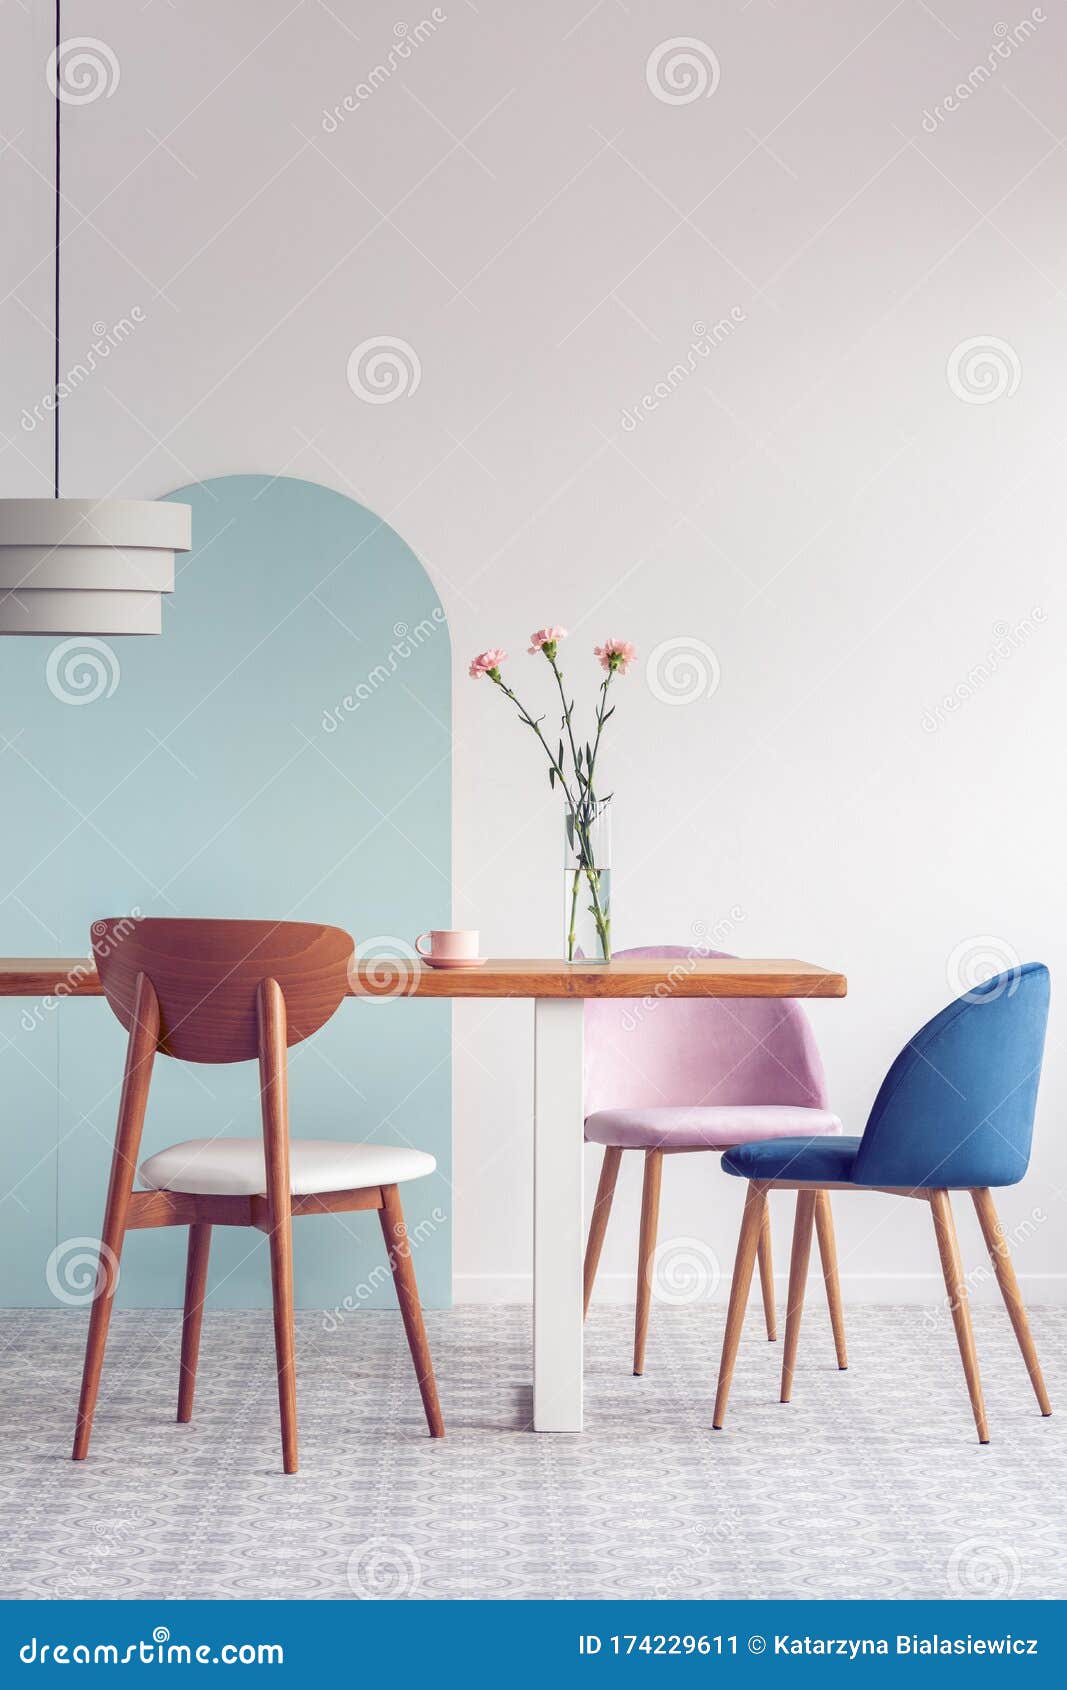 Cadeiras cor-de-rosa pastel estilosas e azuis a gasolina em mesas de madeira compridas em salão de jantar brilhante